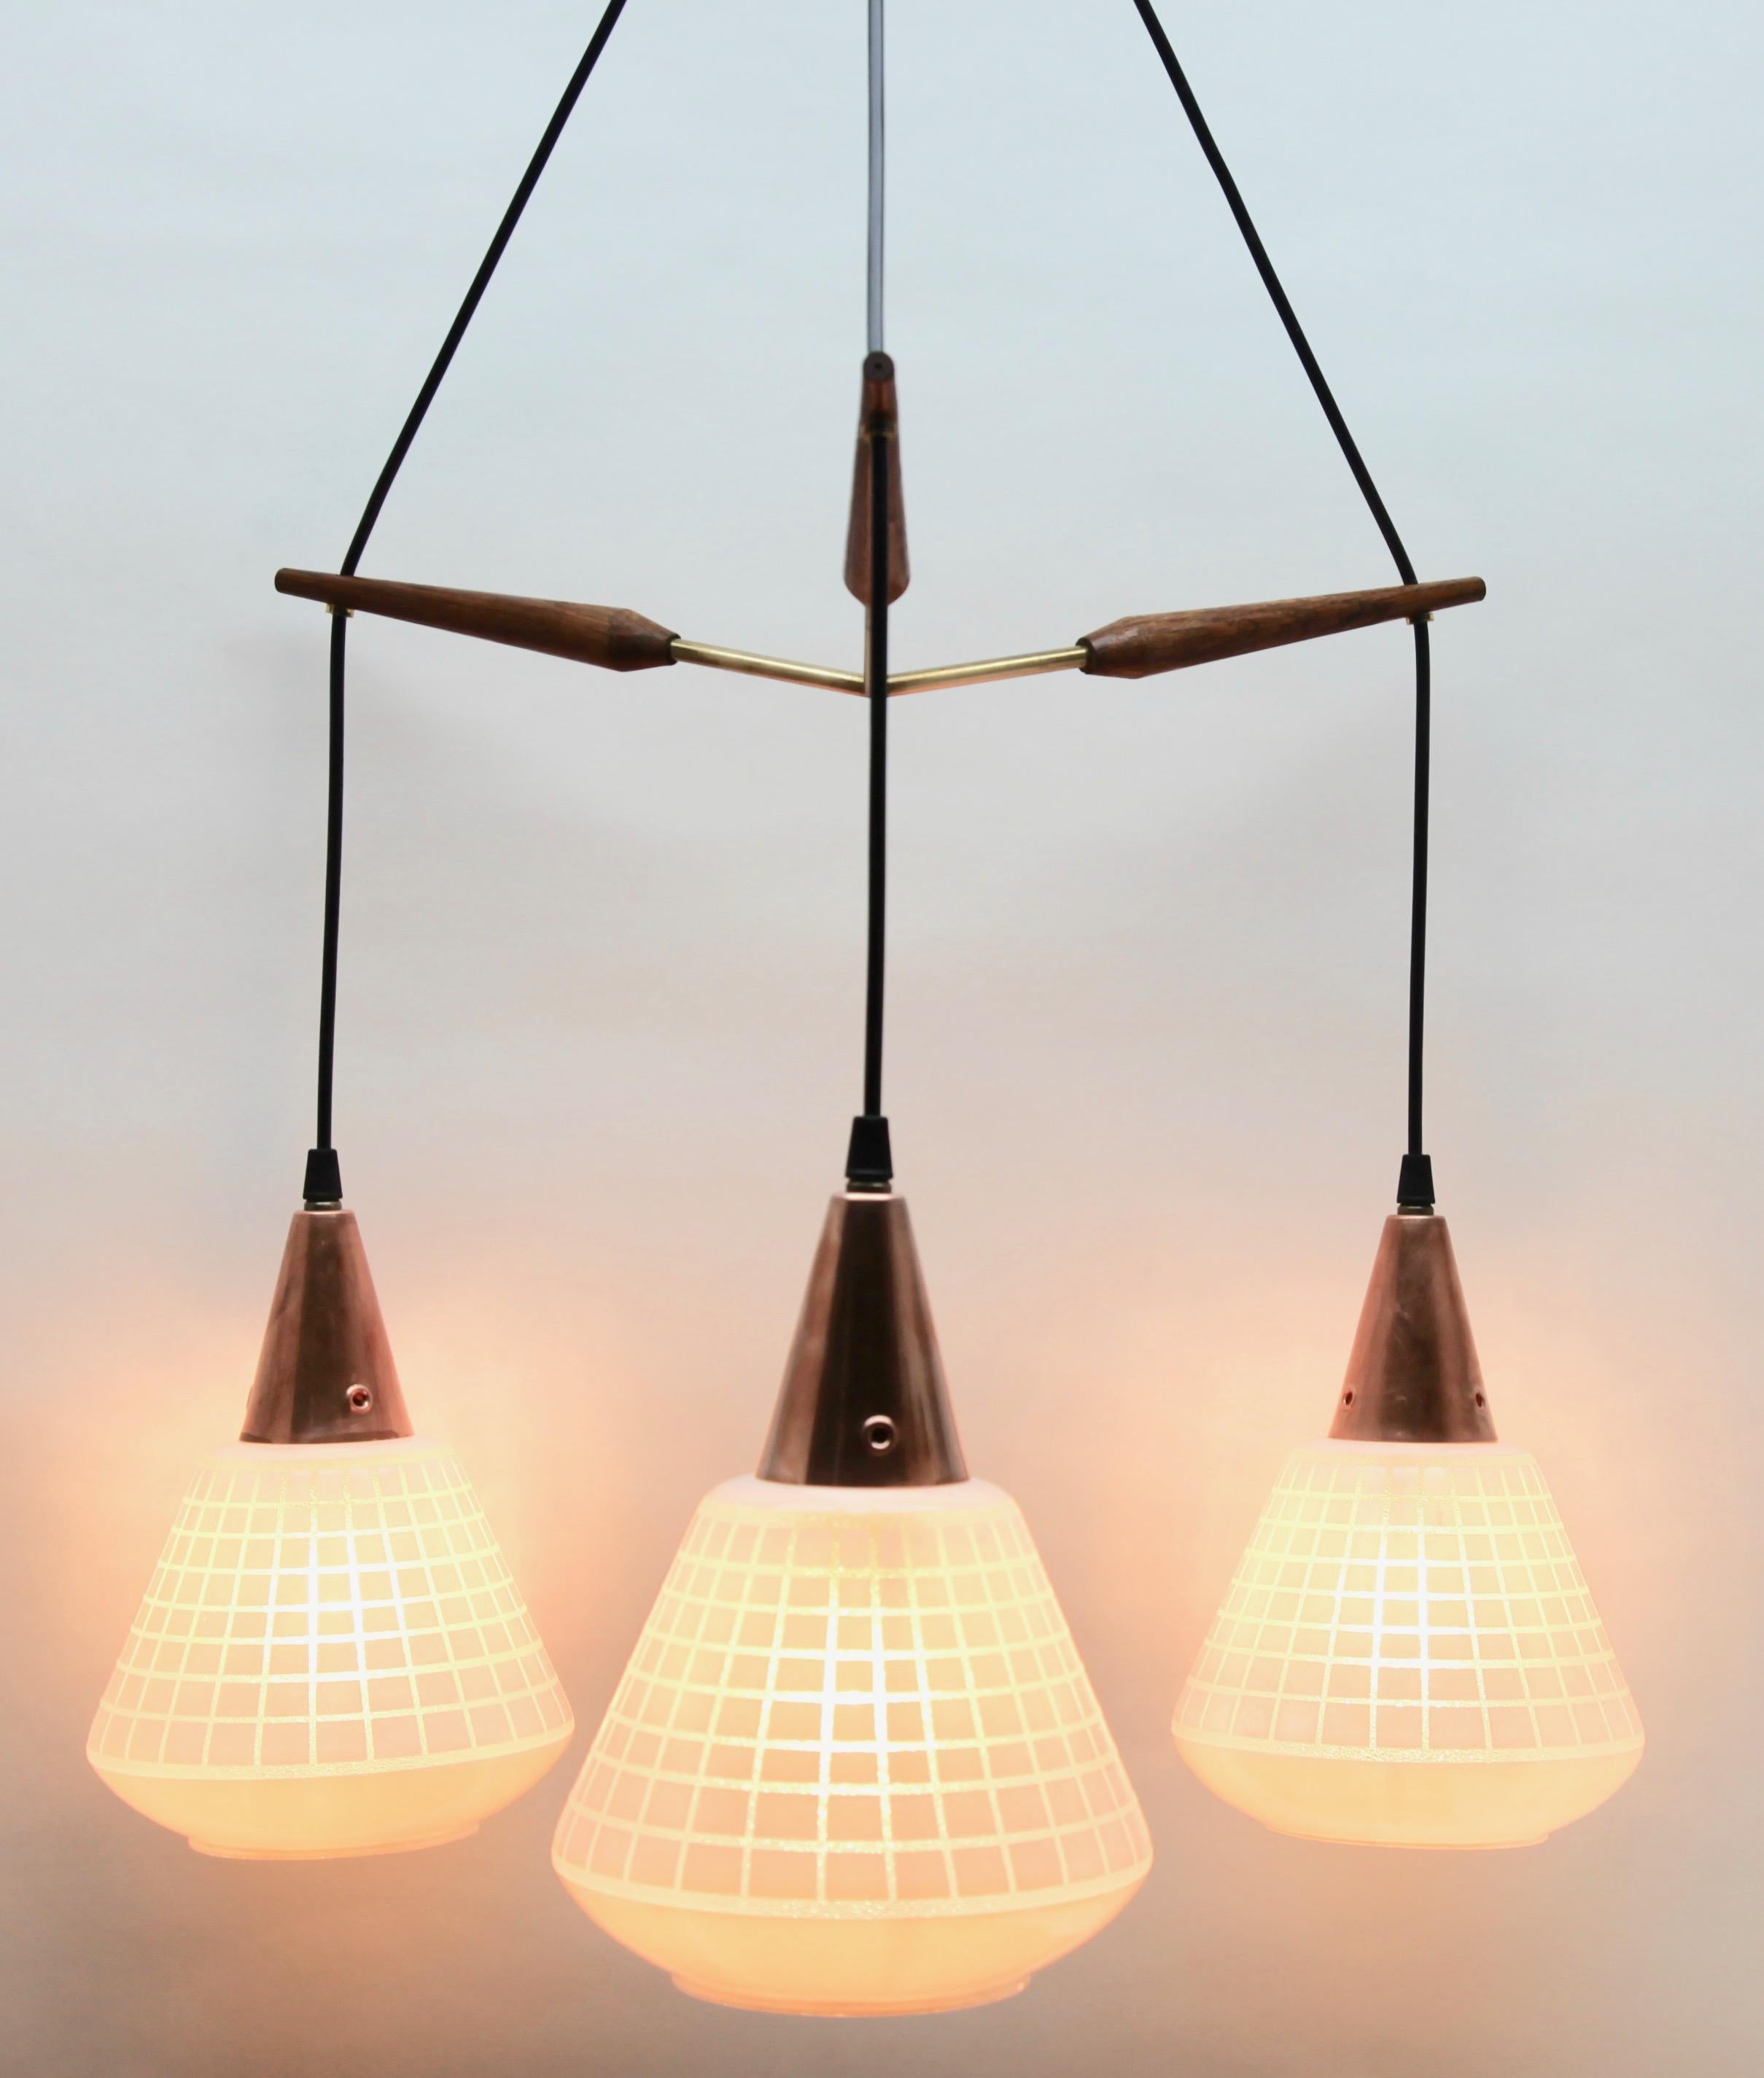 Luminaires suspendus de la fin des années 1950 sur un câble réglable, conçus dans le style scandinave avec du bois de teck et un abat-jour dépoli à motif de grille
Sa forme moderniste classique et sa simplicité de conception en font un exemple